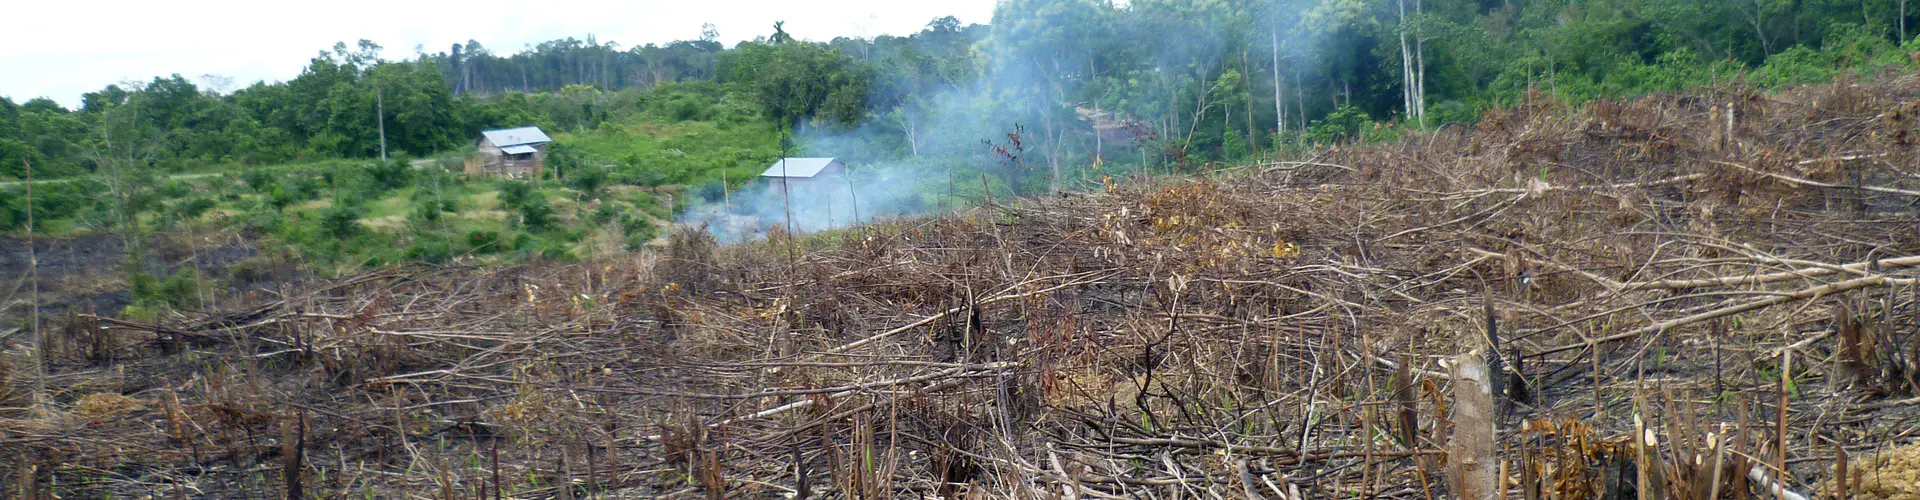 Land clearing in Jambi, Sumatra (Credit: Clifton Sabajo)